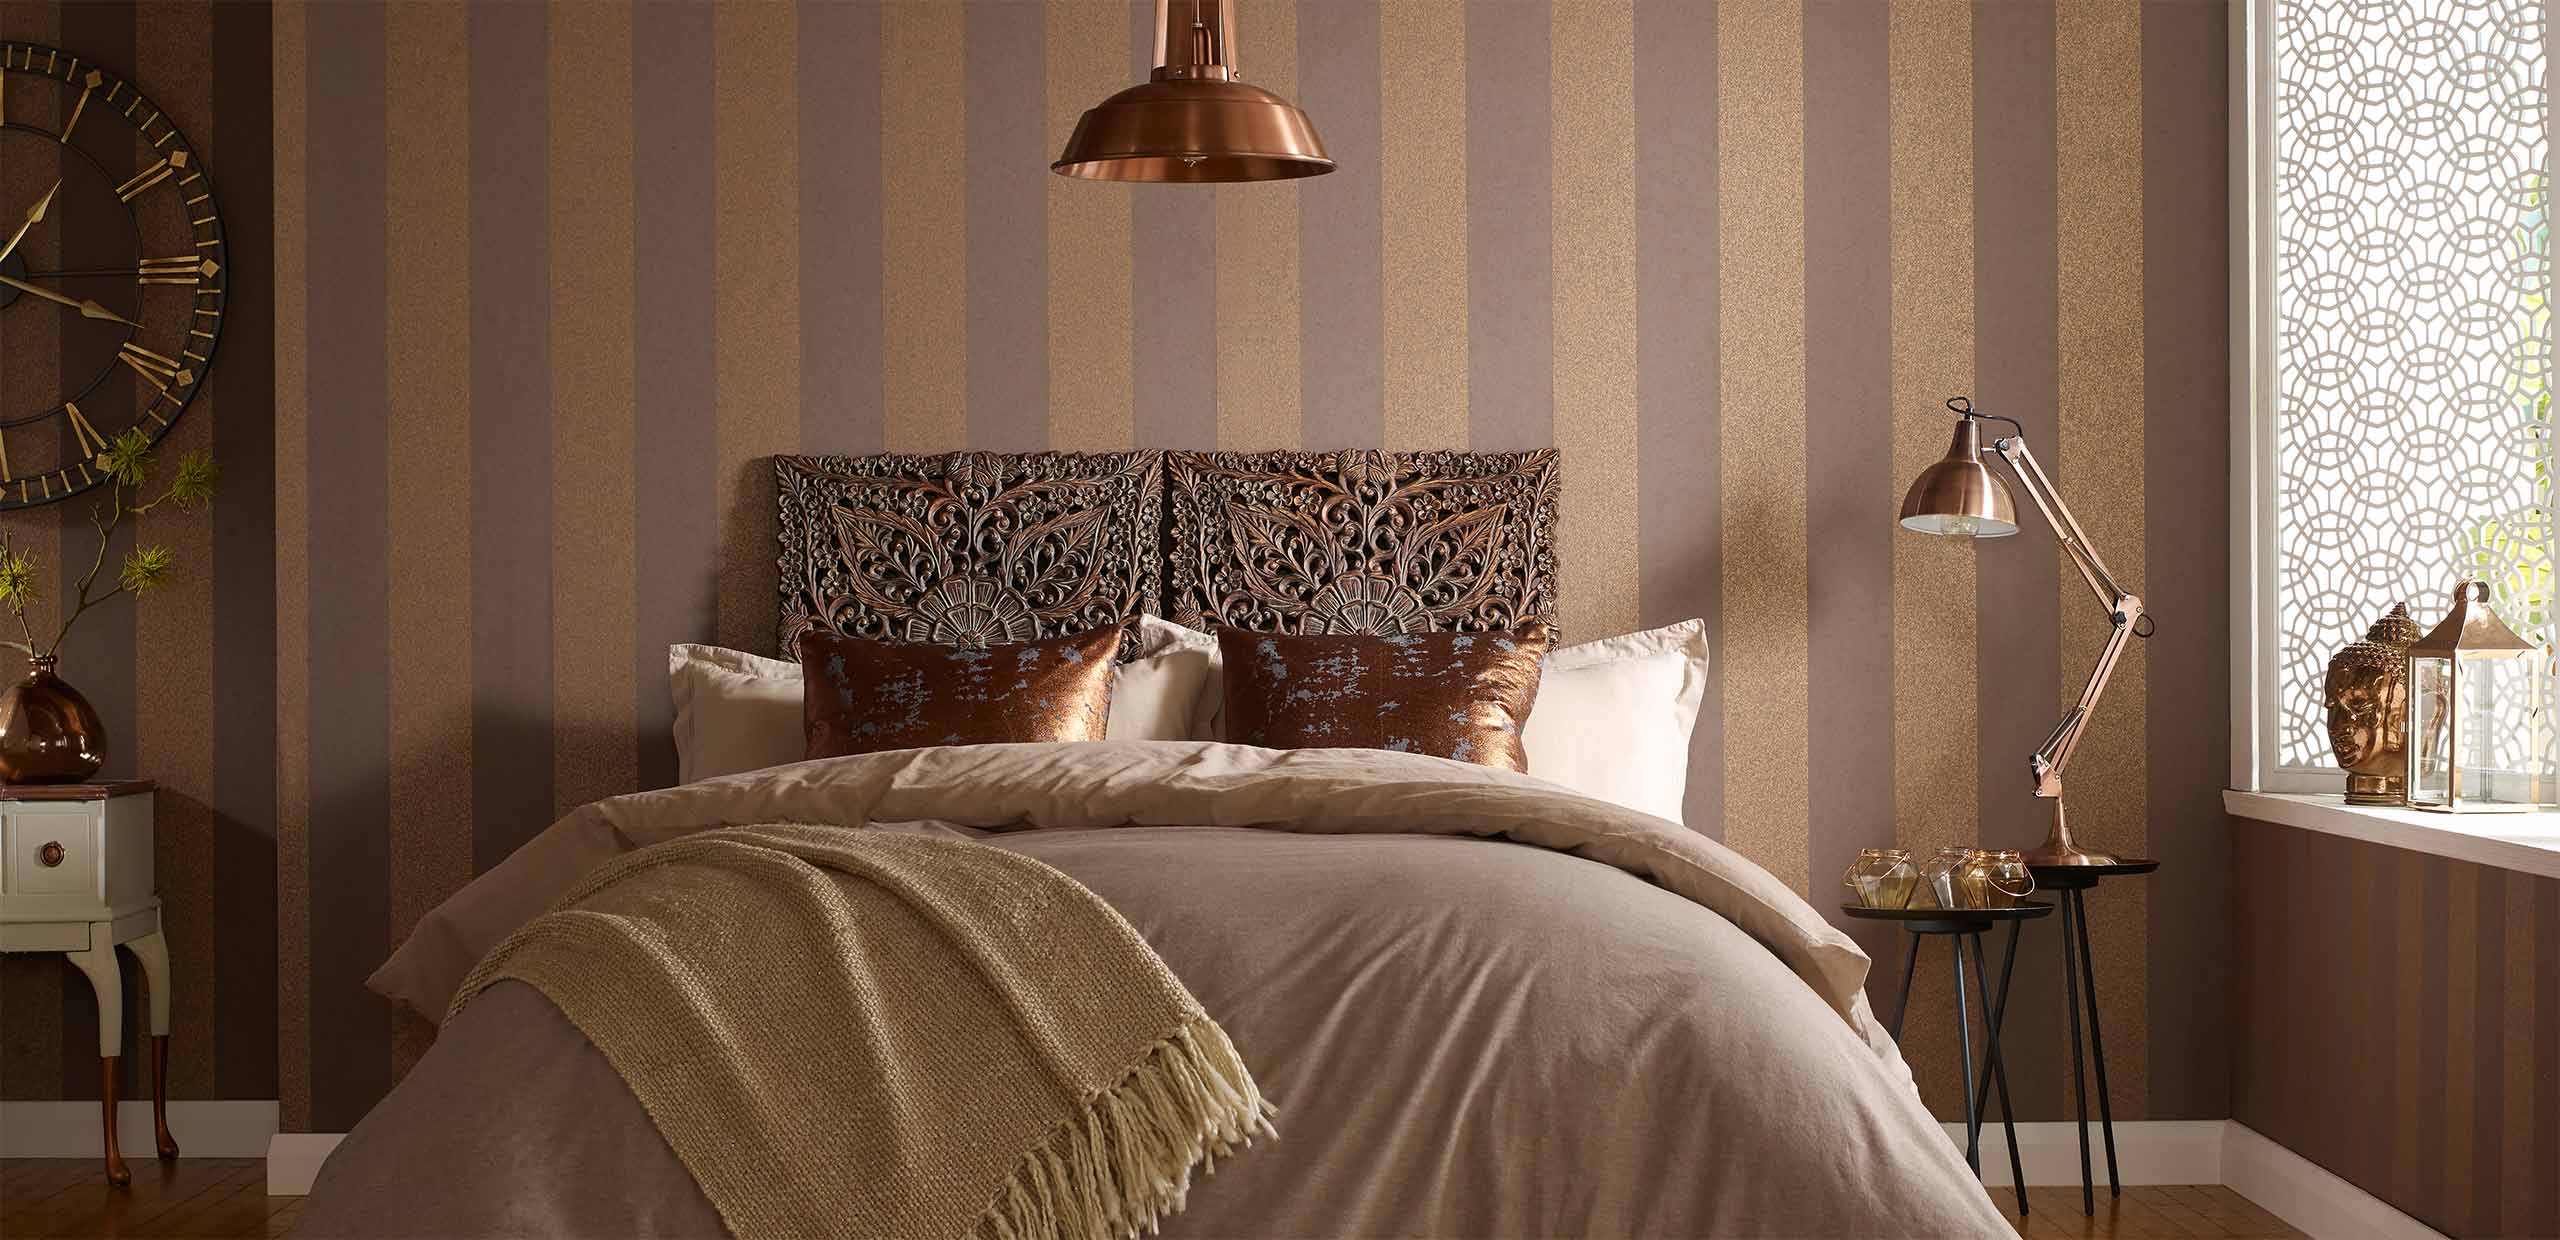 Elegant Wallpaper For Bedroom Wall Decor Idea Bazaar - 2560x1240 Wallpaper  